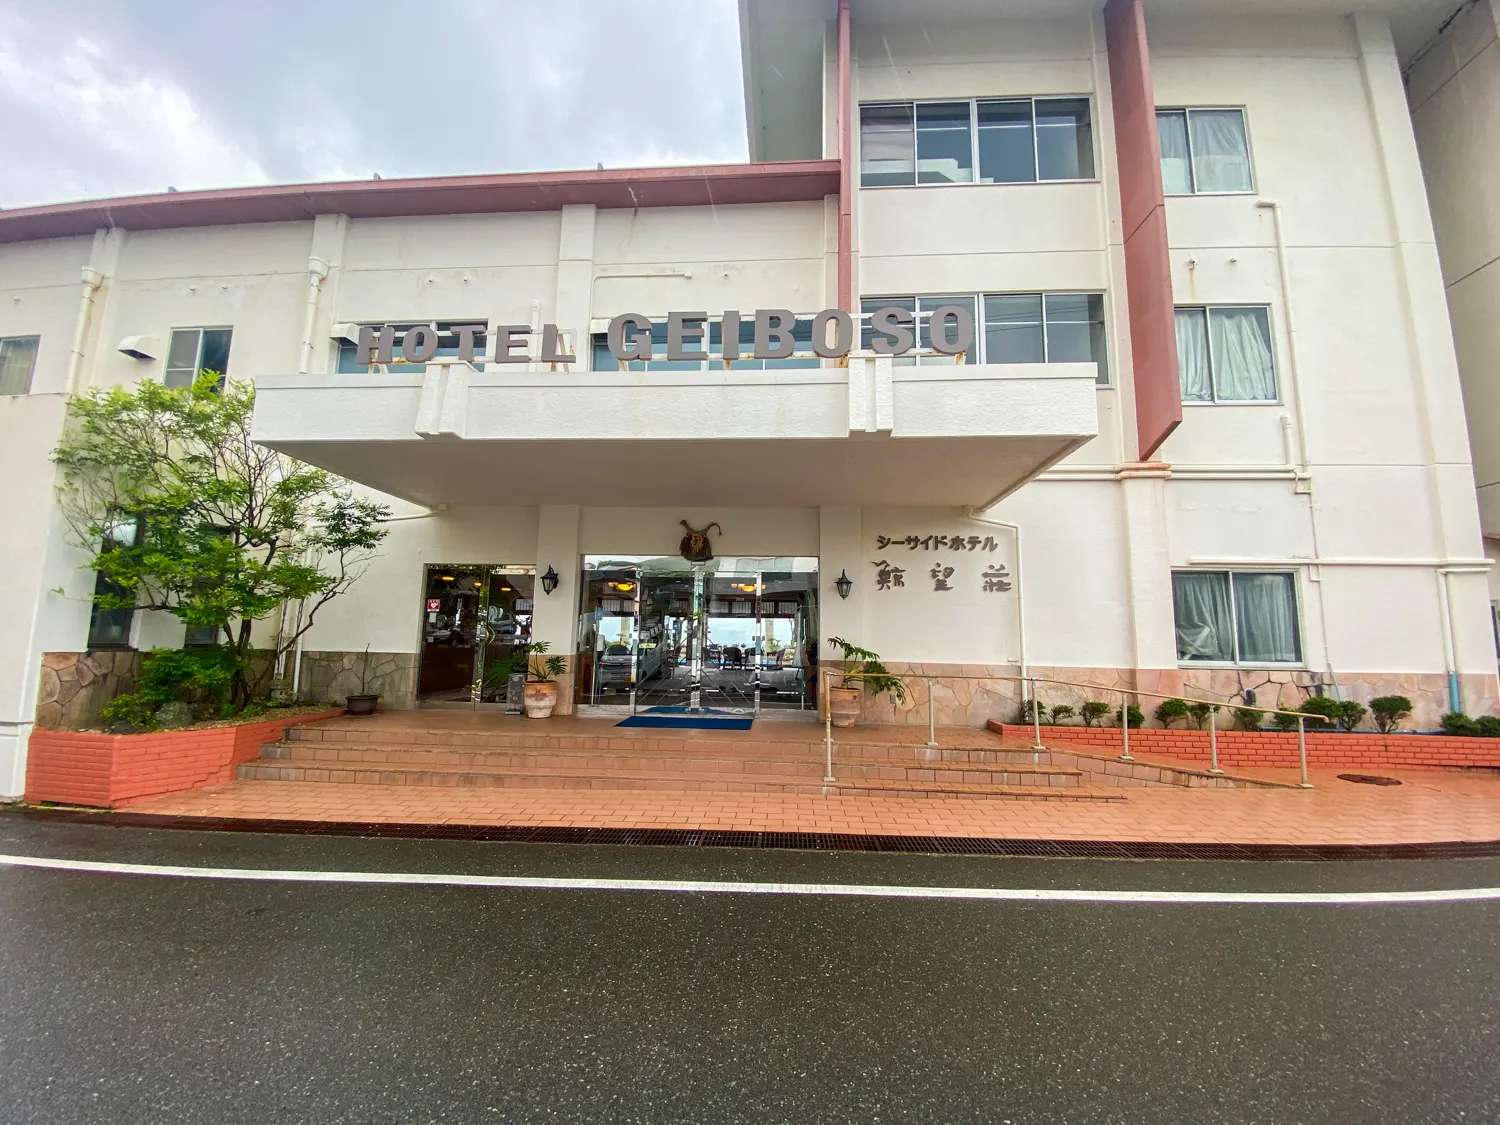 伊勢志摩の景色がよく食事美味しいホテル シーサイドホテル鯨望荘